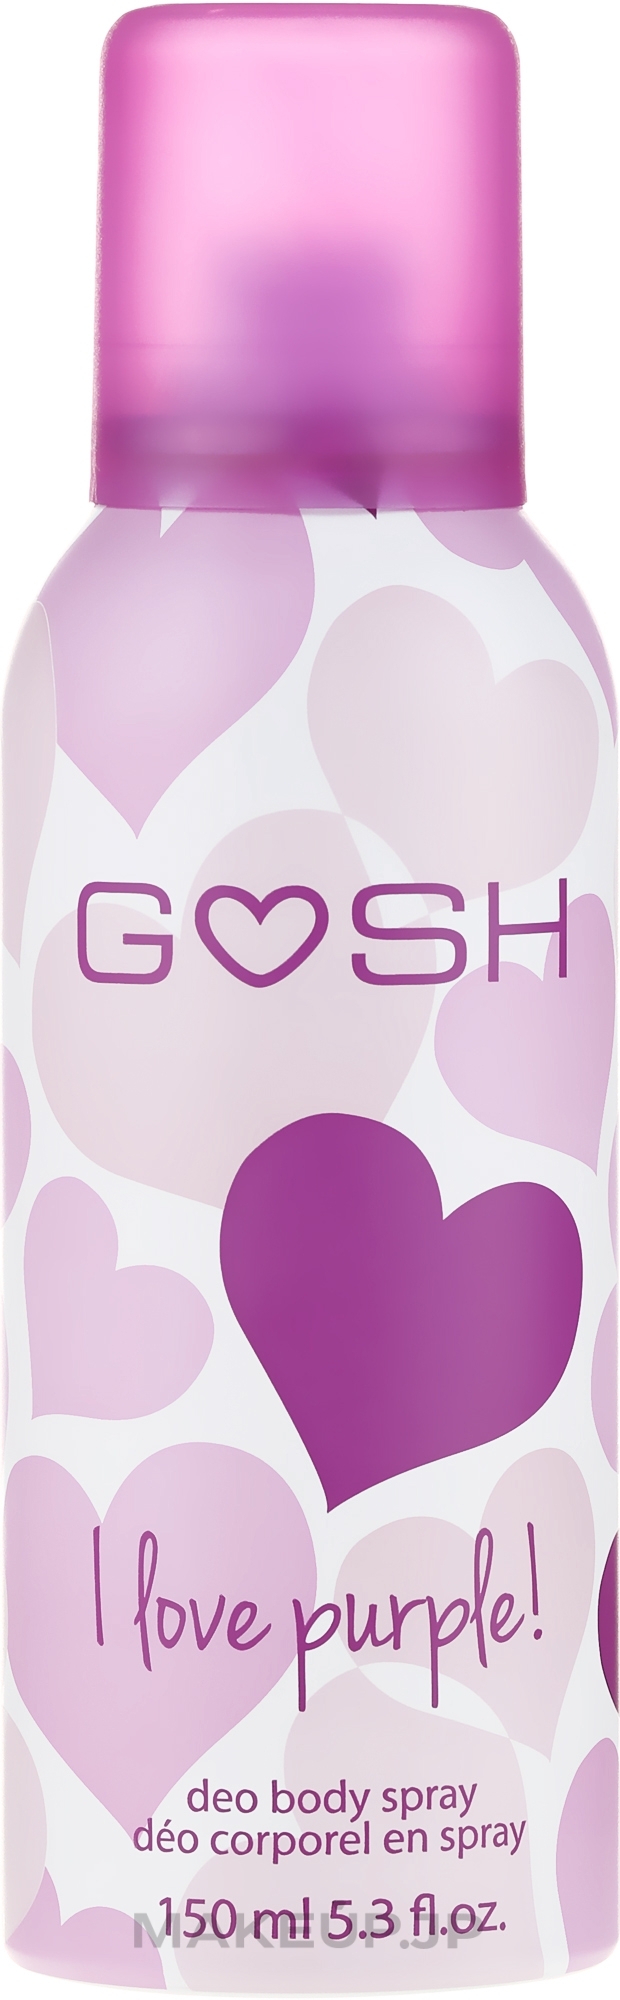 Deodorant Spray - Gosh I Love Purple Deo Body Spray — photo 150 ml